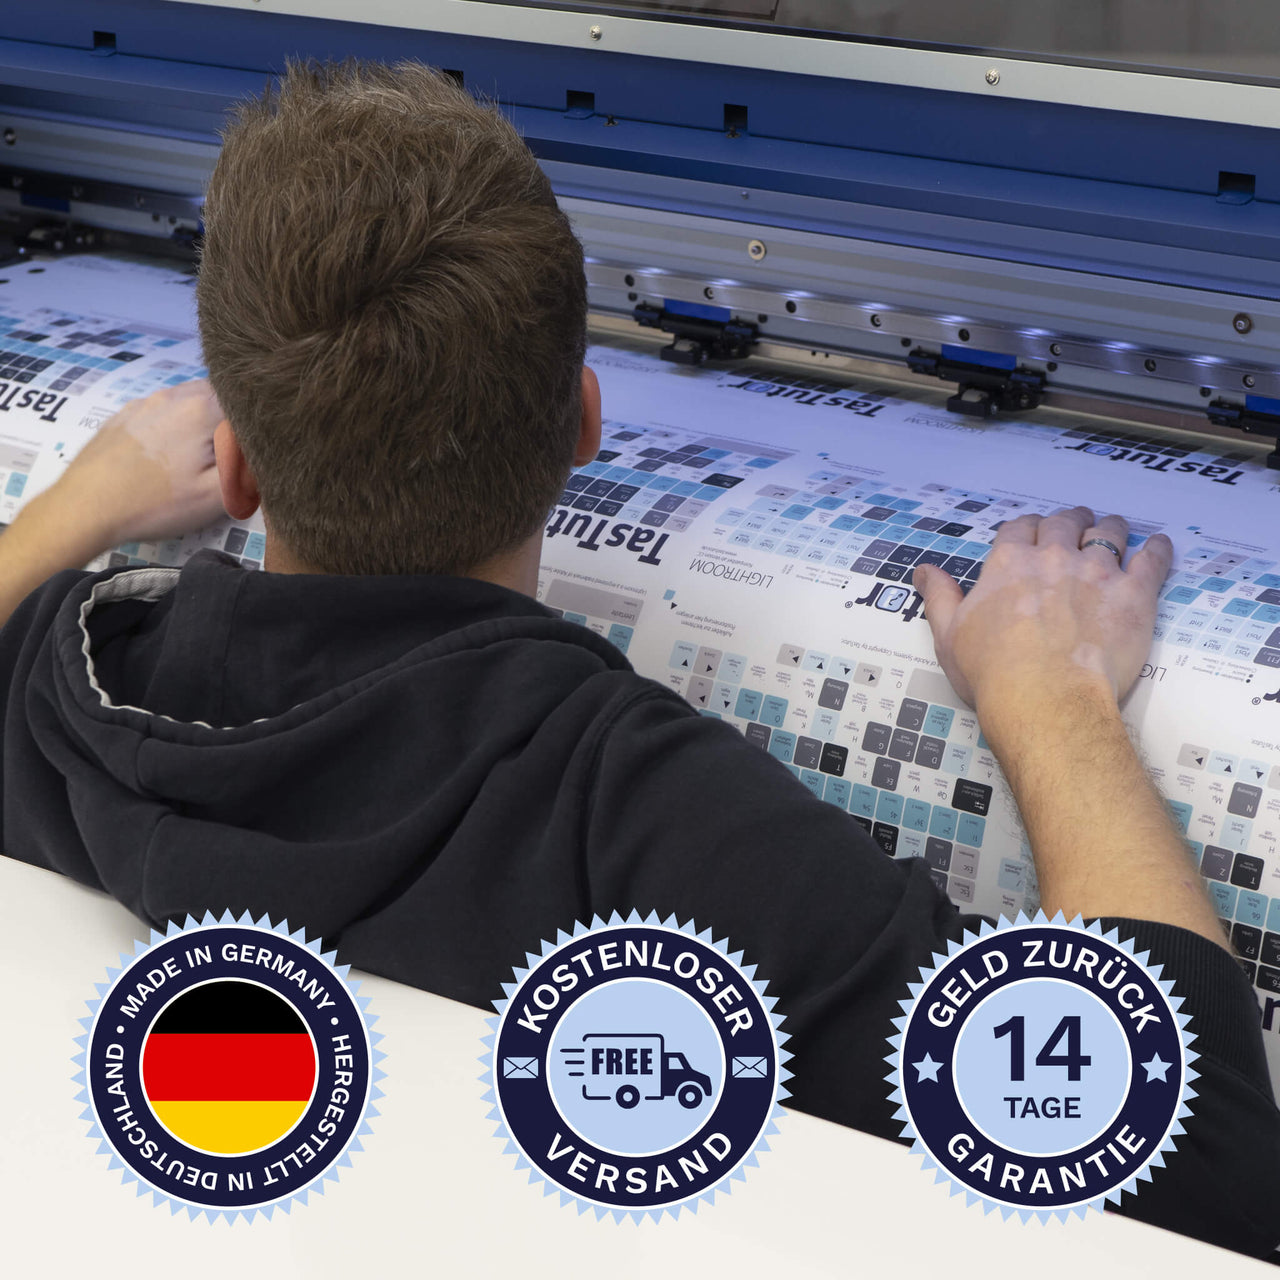 Cinema 4D Tastaturaufkleber werden in Deutschland hergestellt. Der Versand ist kostenlos und wir gewährleisten 14 Tage Geld zurück Garantie | TasTutor